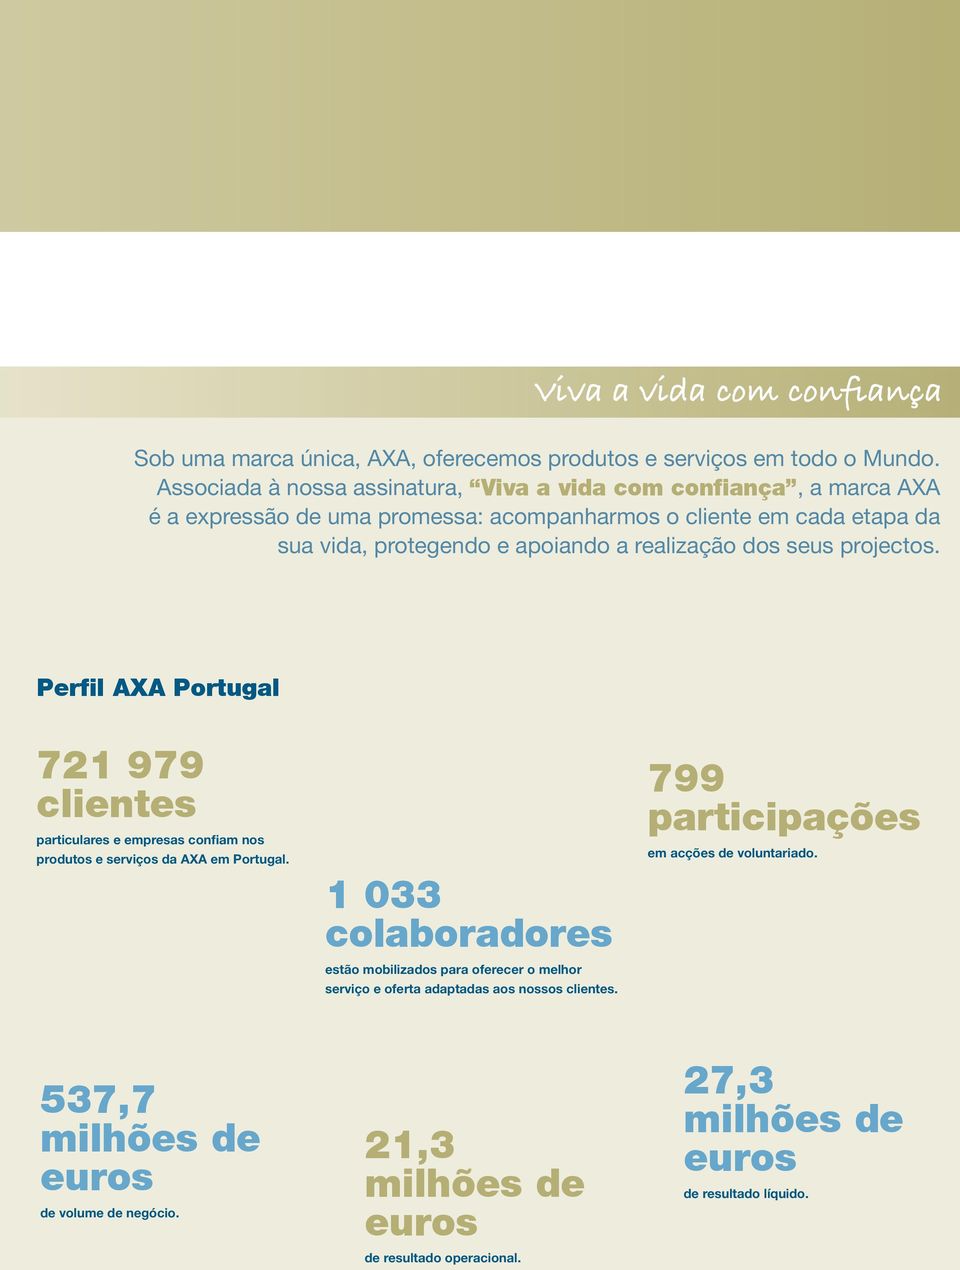 realização dos seus projectos. Perfil AXA Portugal 721 979 clientes particulares e empresas confiam nos produtos e serviços da AXA em Portugal.